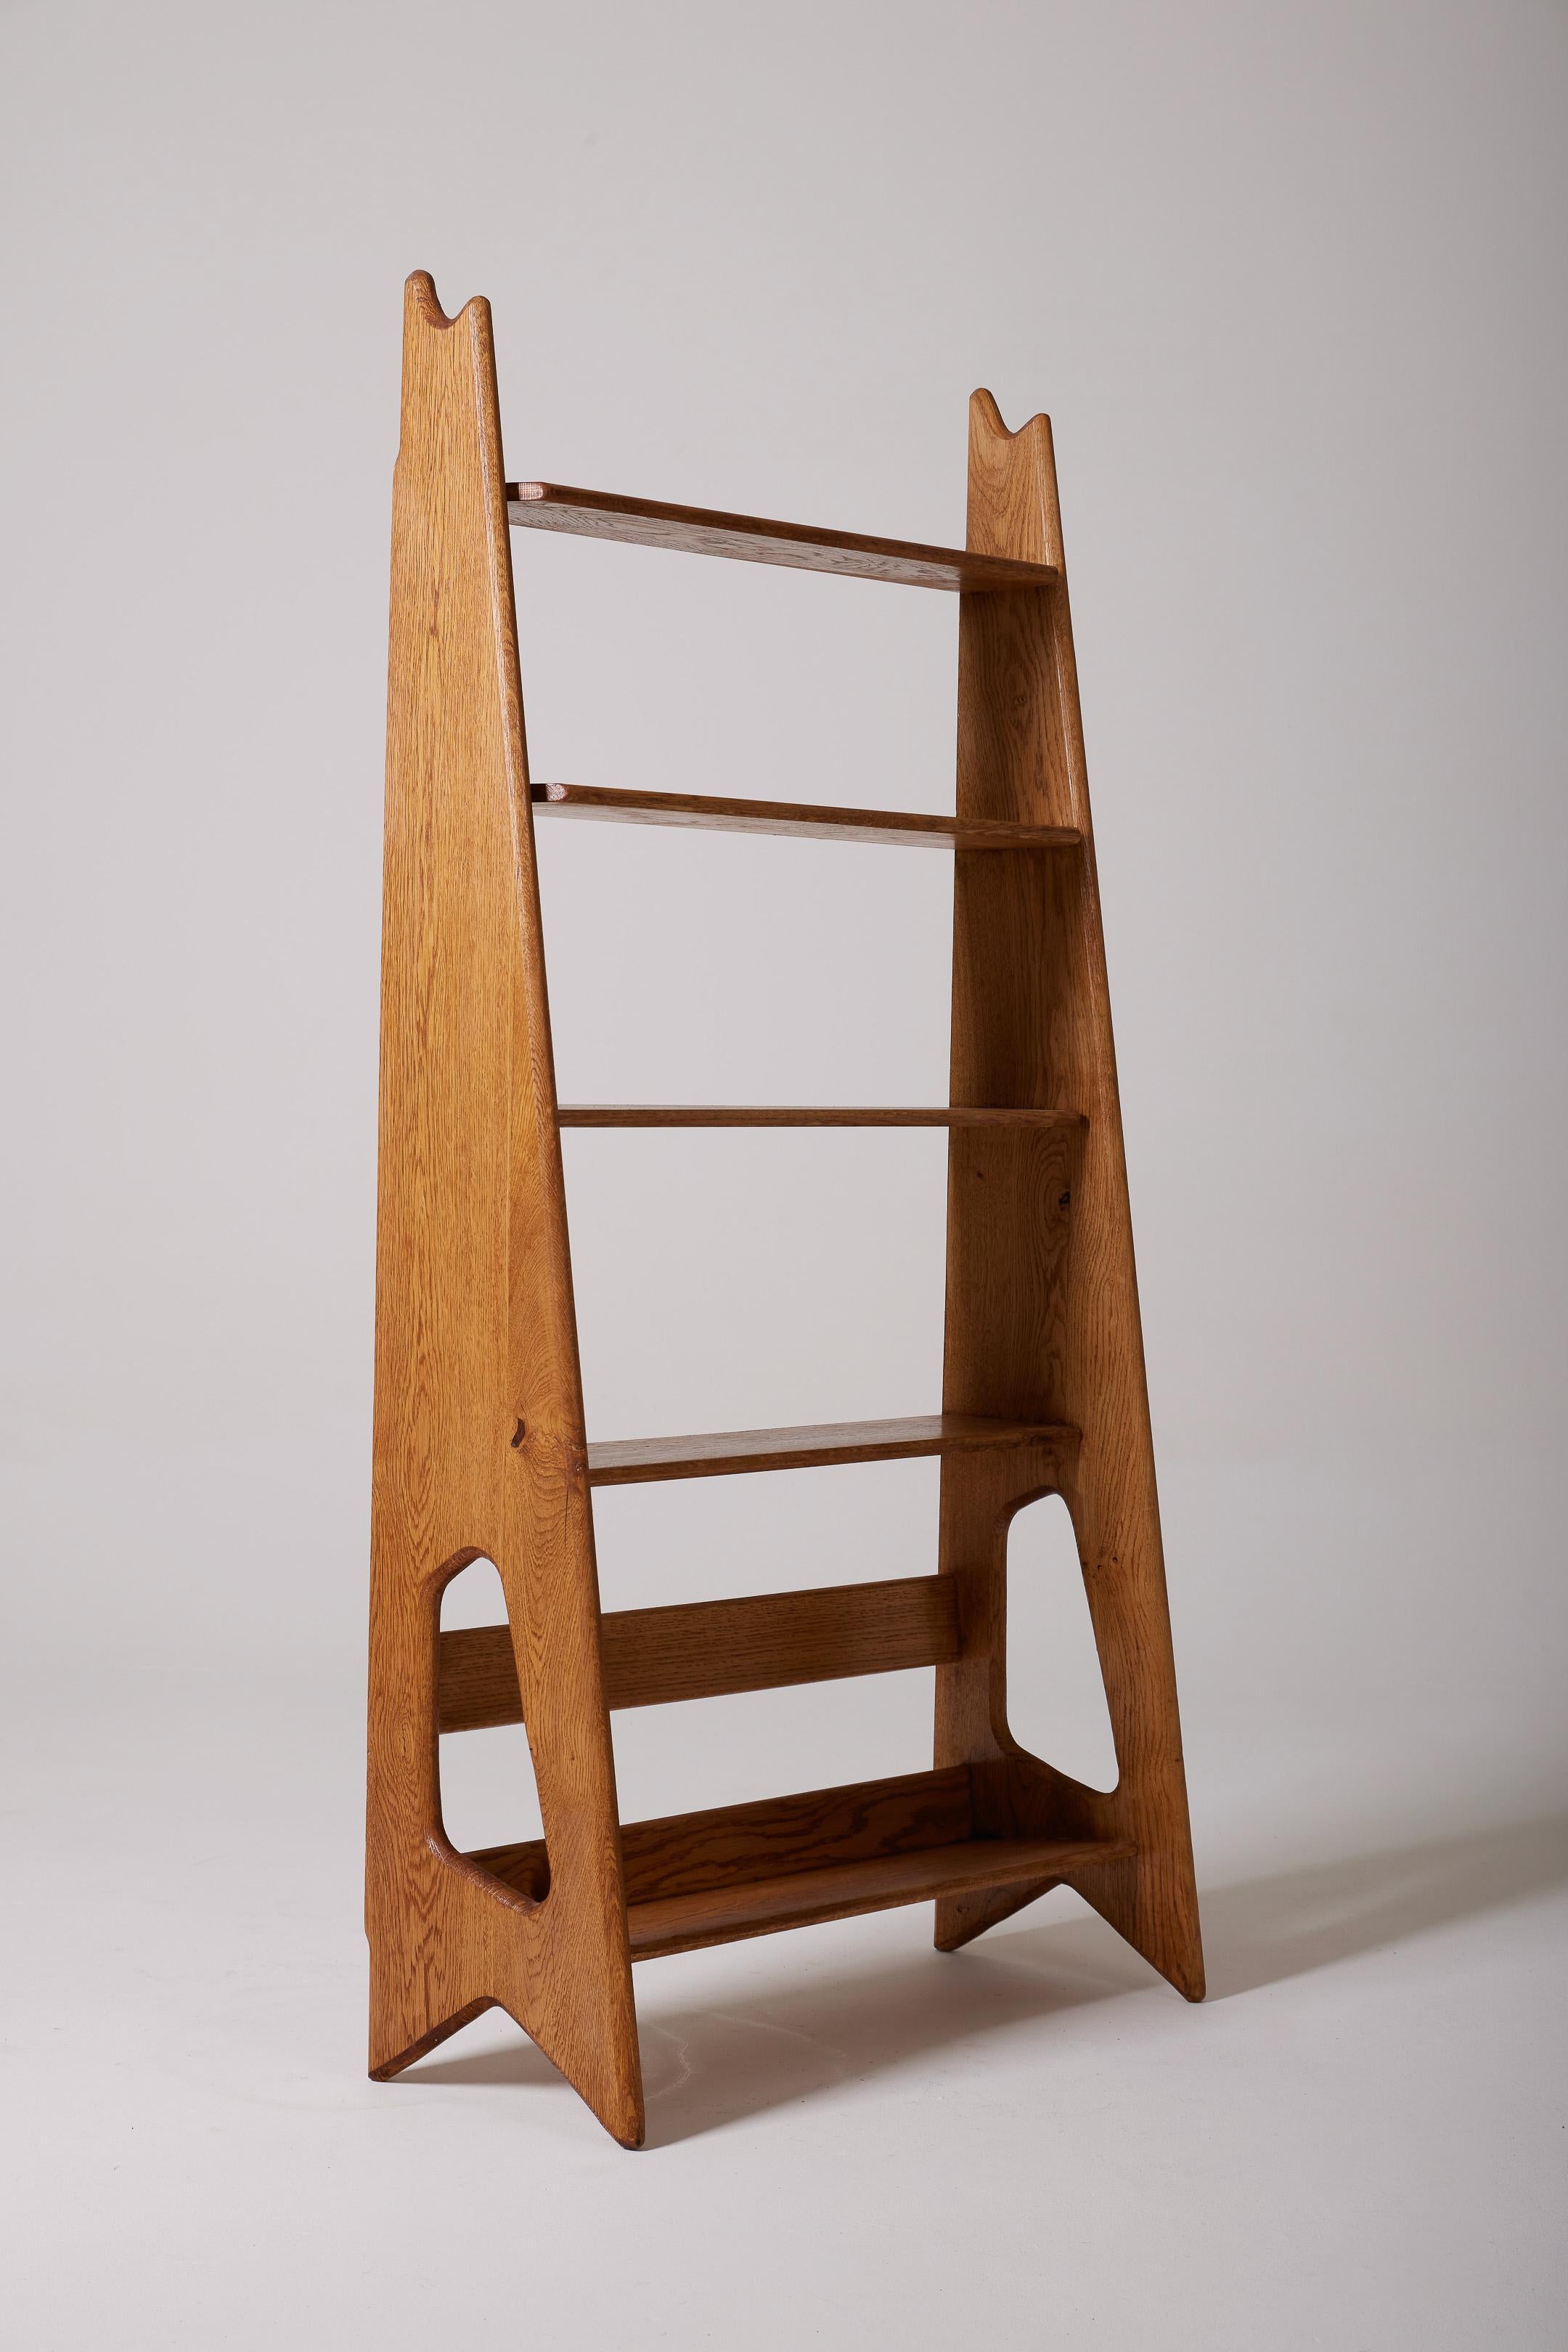 Wooden shelf by Pierre Cruège For Sale 4